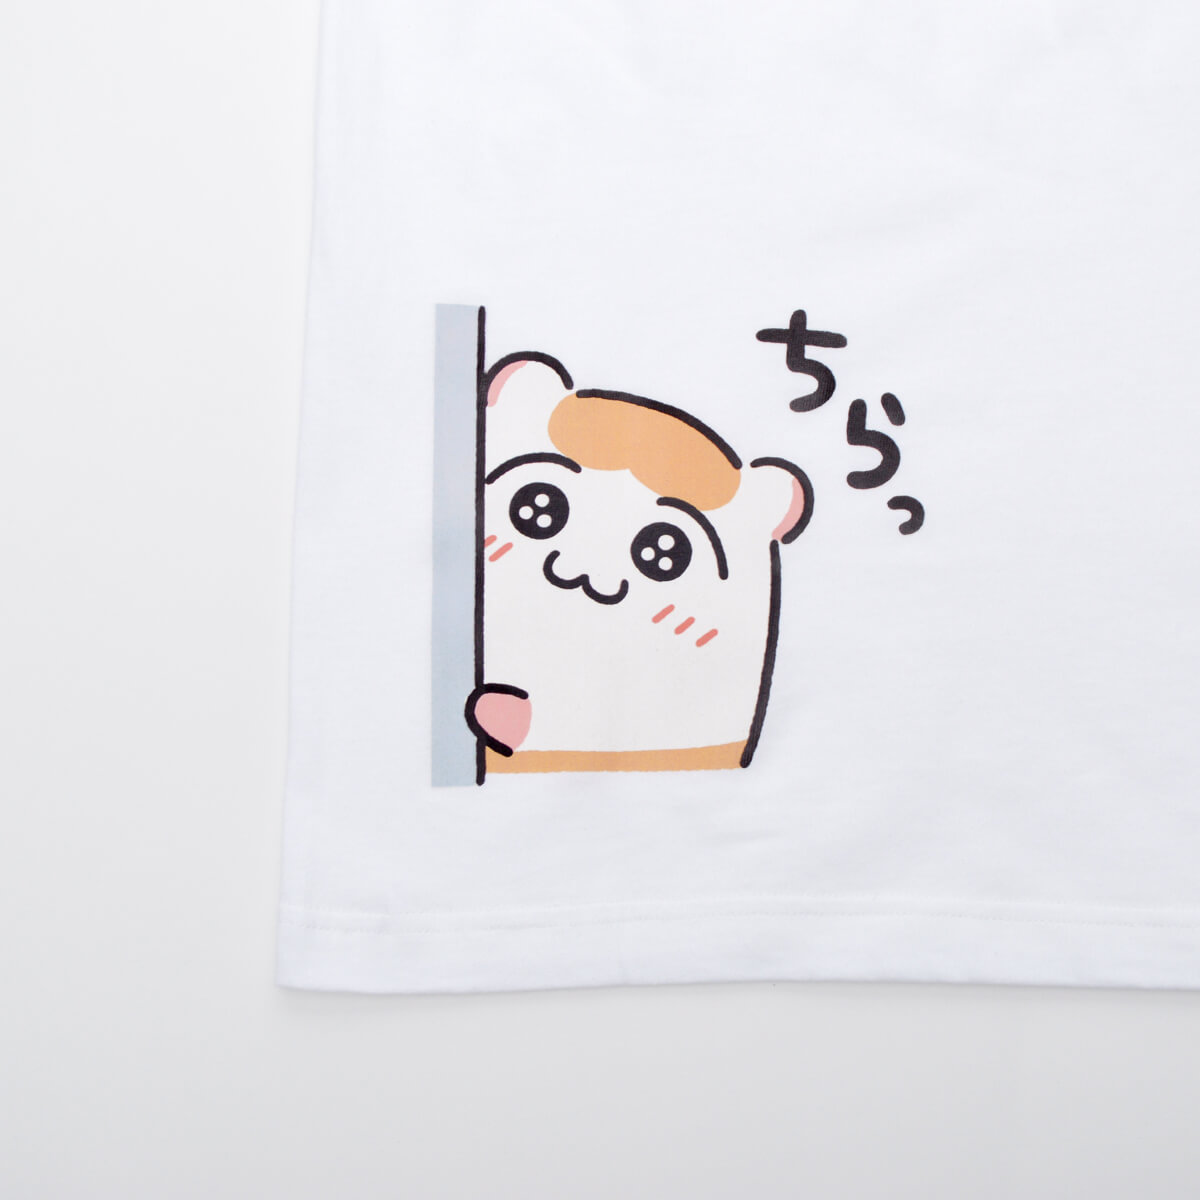 Tシャツ「ちこまる」ちこまるビクビク/ホワイト